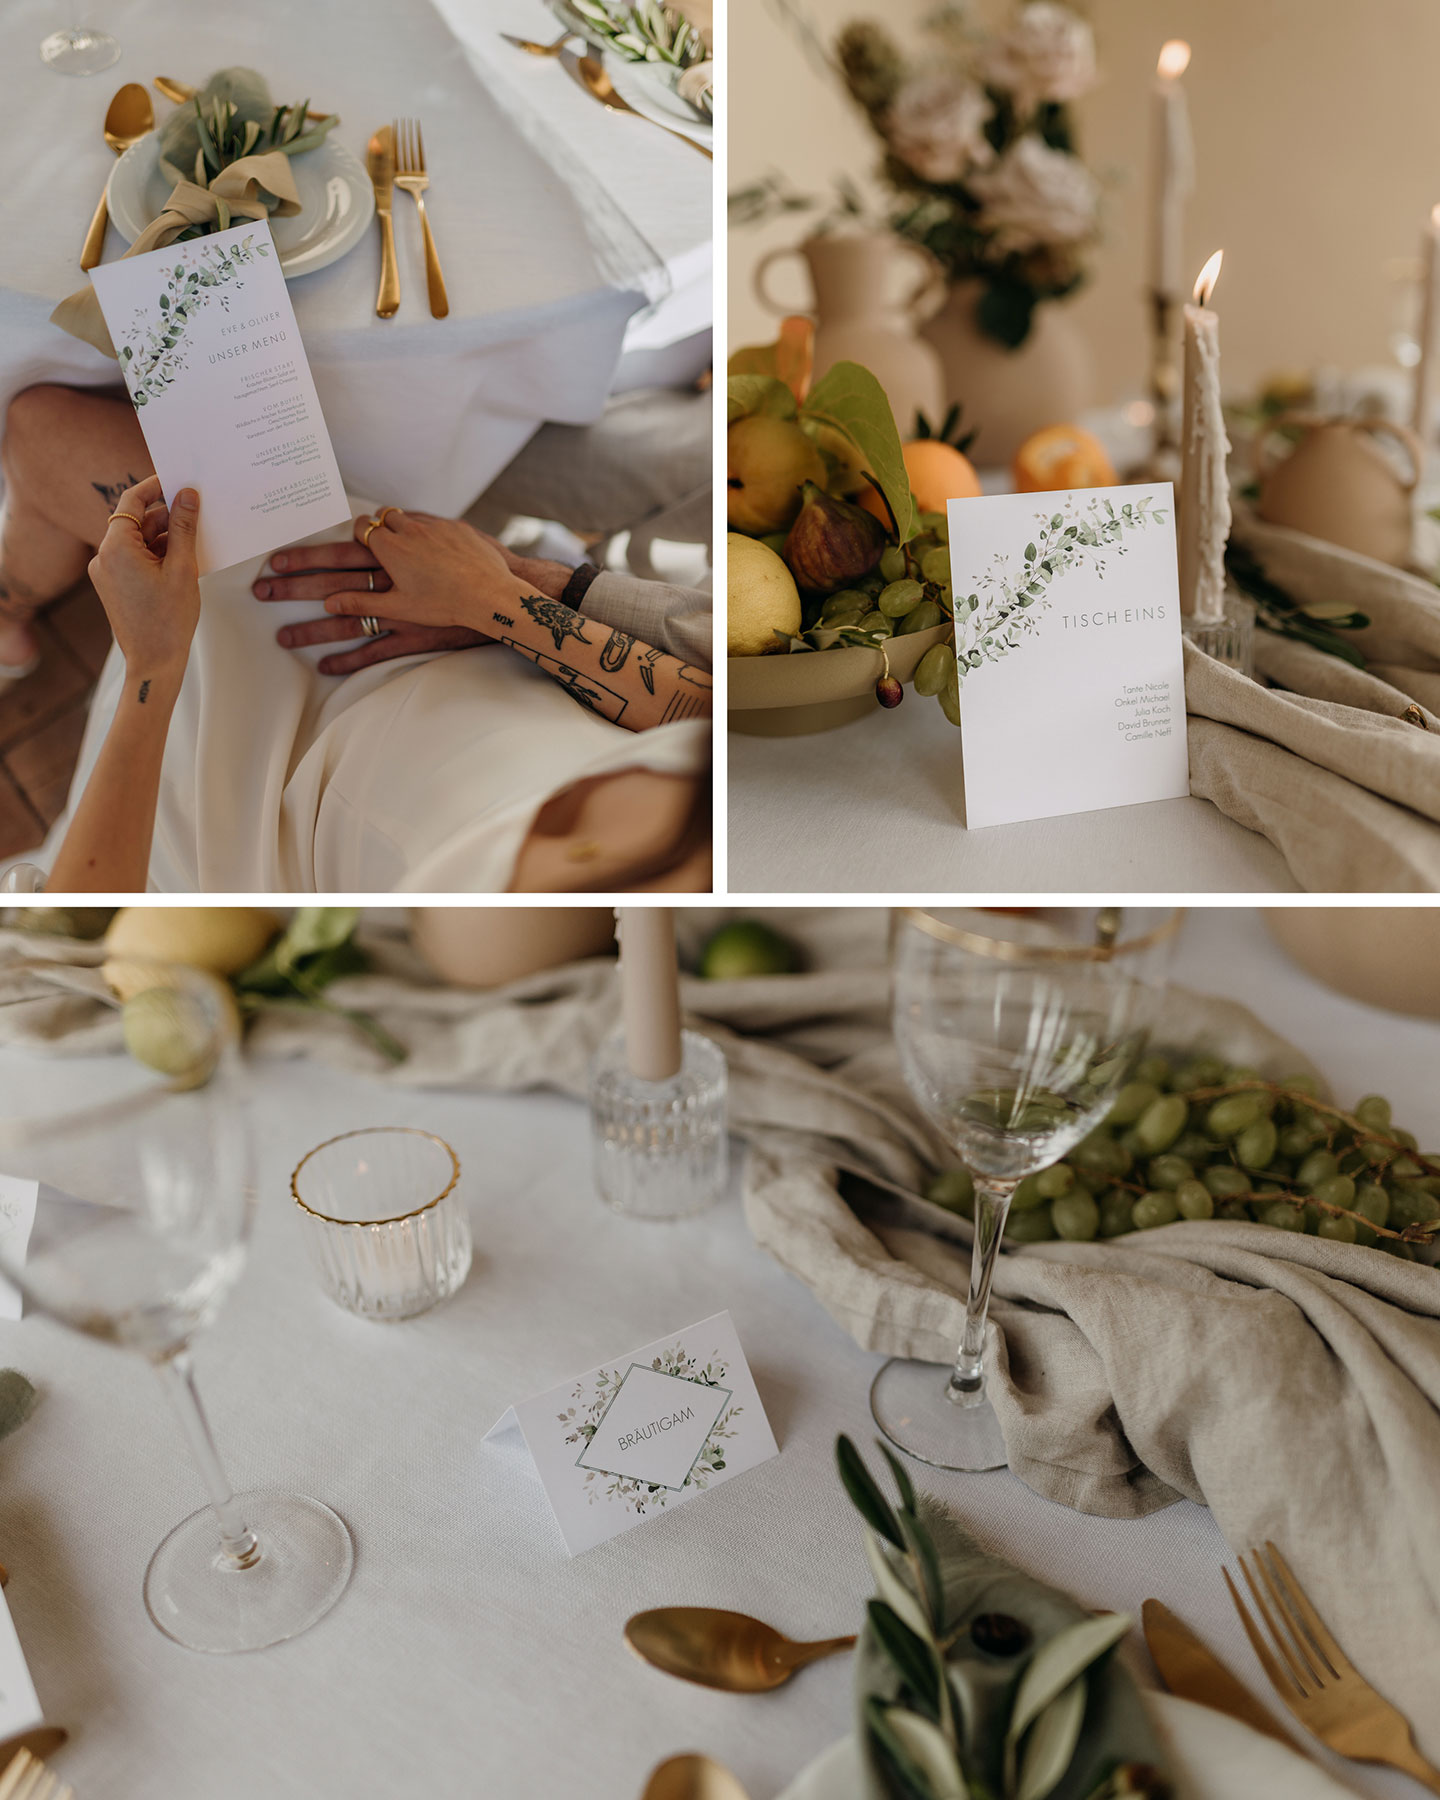  Der Hochzeitstisch ist gedeckt und mit der passenden Papeterie und Deko versehen. Olivenblätter, Zitrusfrüchte sowie goldenes Besteck sind der Hingucker auf dem Tisch.